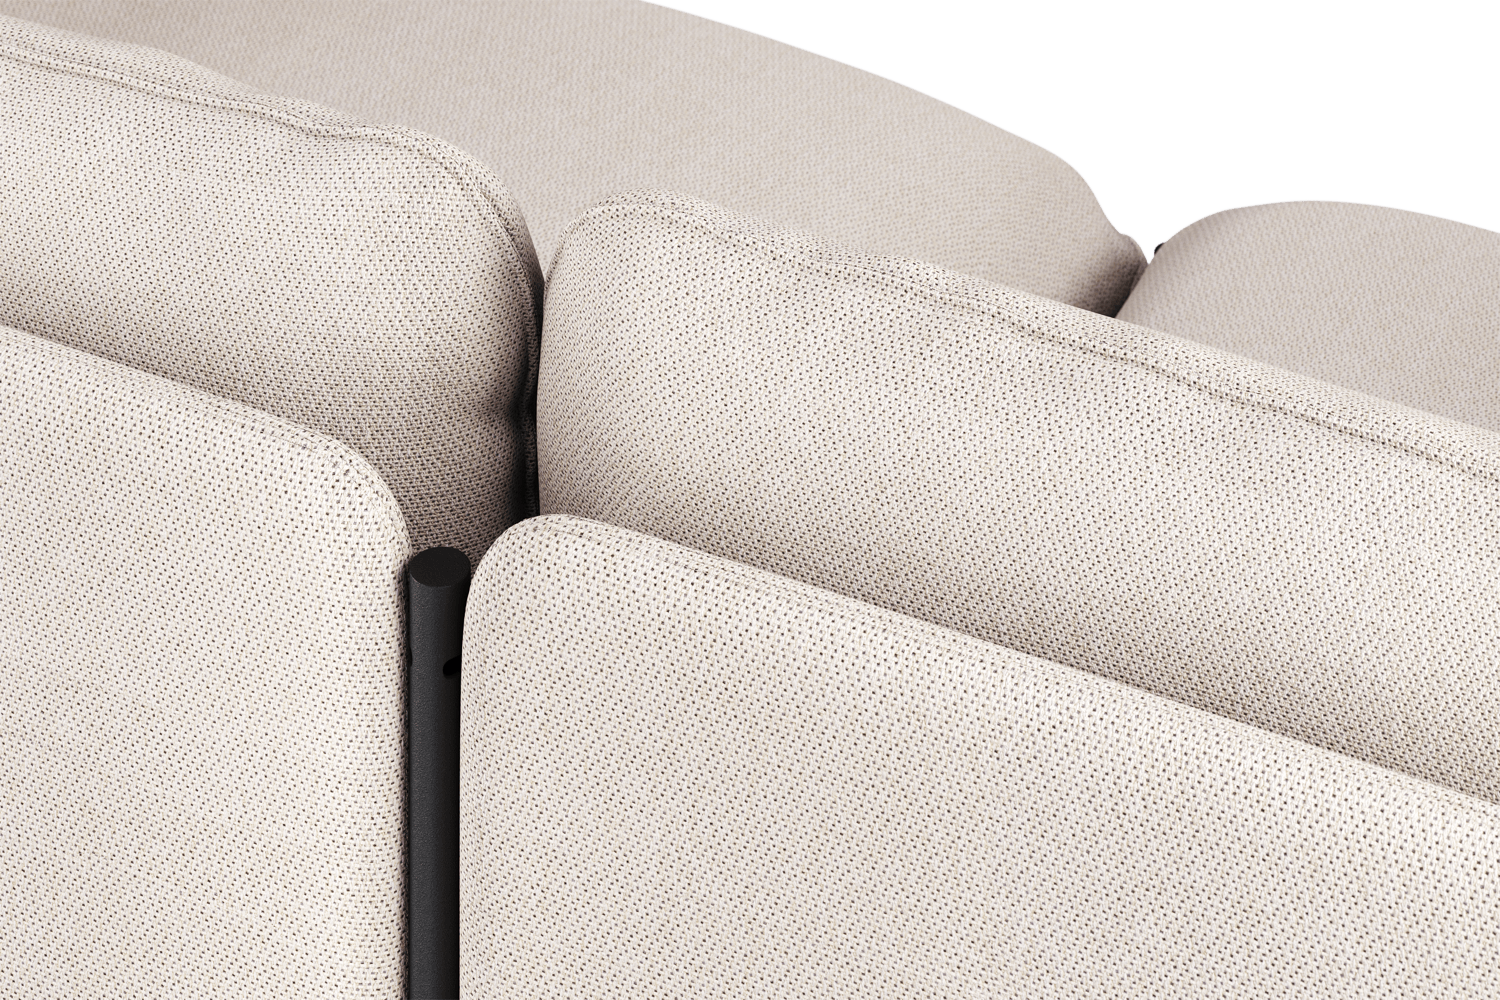 Toom Modular Sofa 4-Sitzer Konfiguration 1b in Oatmilk Beige  präsentiert im Onlineshop von KAQTU Design AG. Ecksofa links ist von Noo.ma